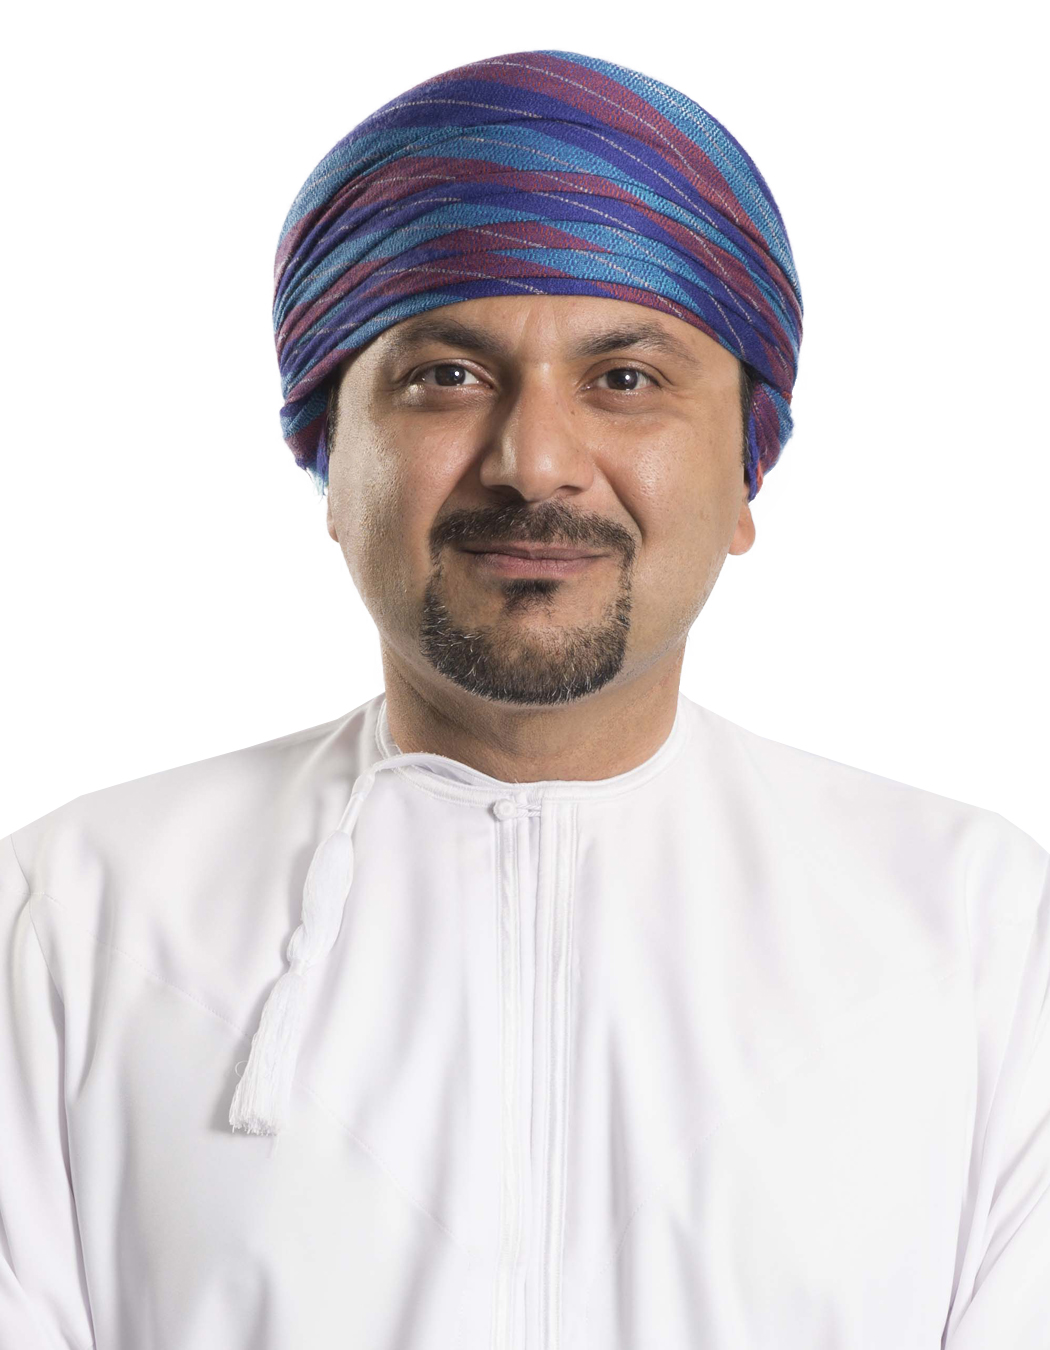 Amjad Al-Lawati from Bank Muscat